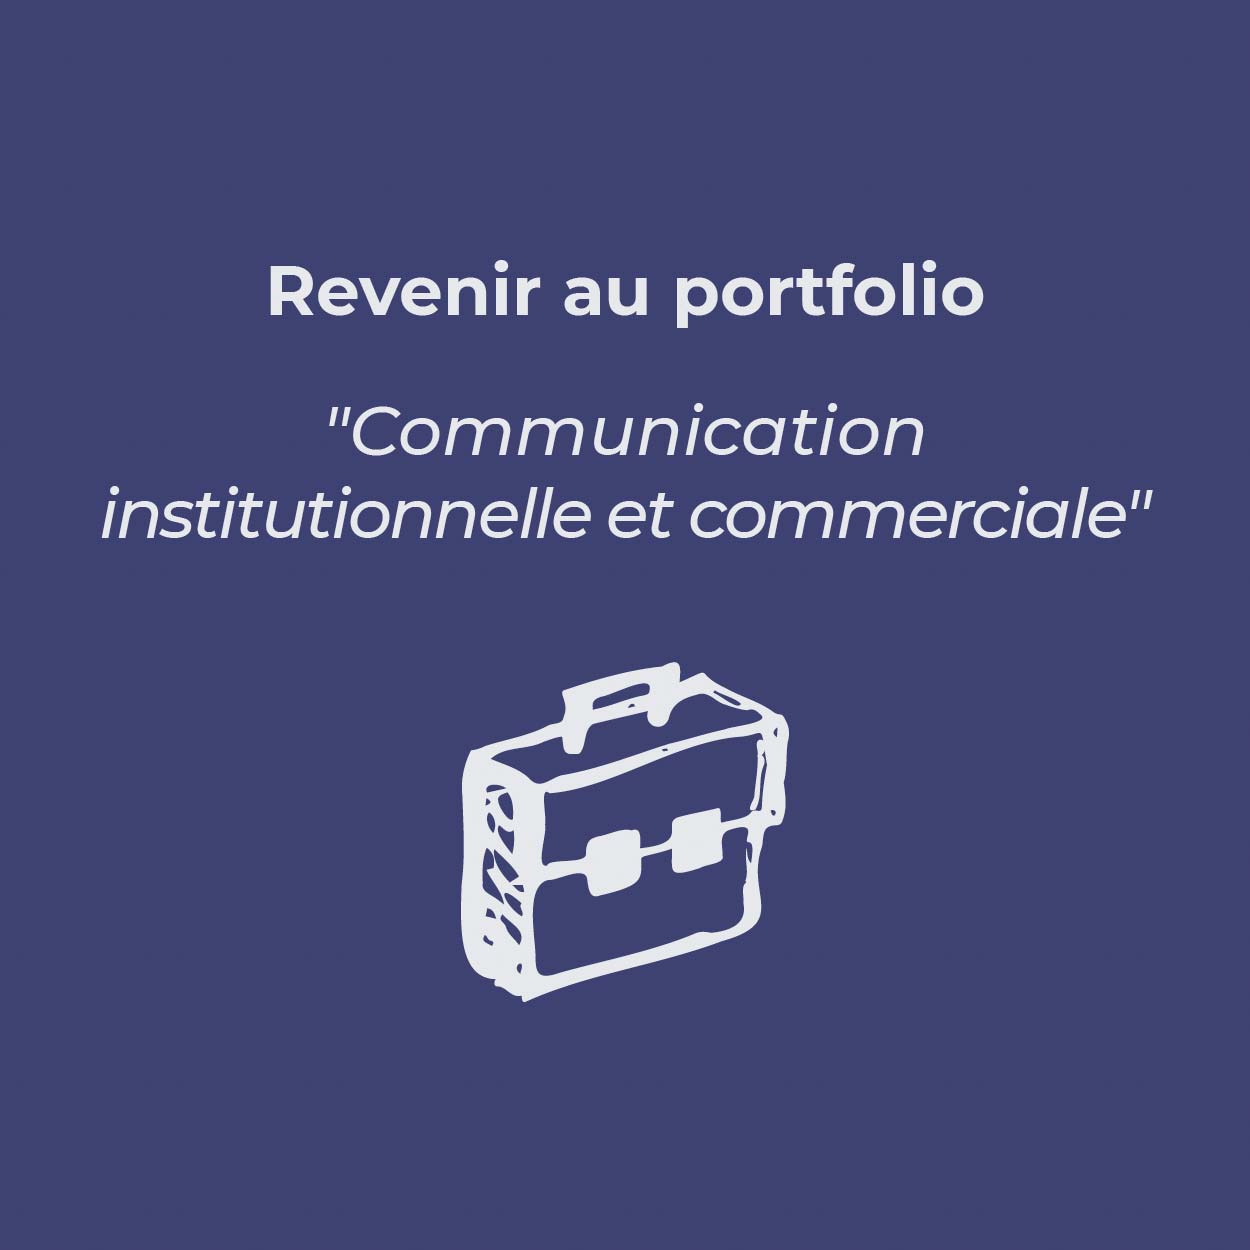 Bouton pour revenir au portfolio « Communication institutionnelle et commerciale »